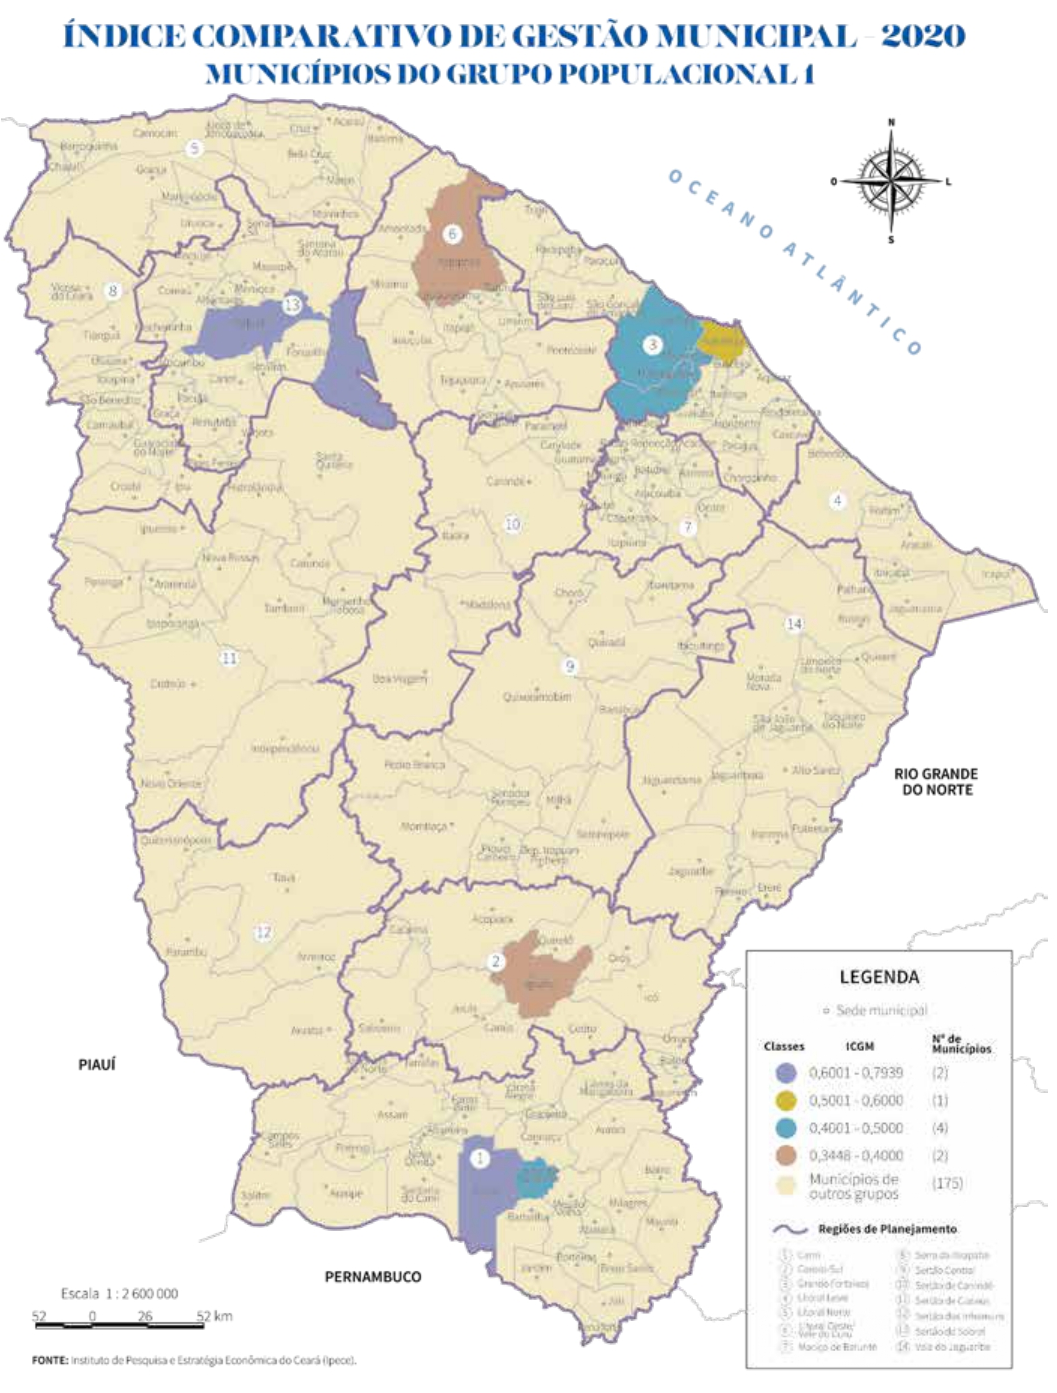 Mapa do índice comparativo de gestão municipal 2020 - municípios do grupo populacional 1